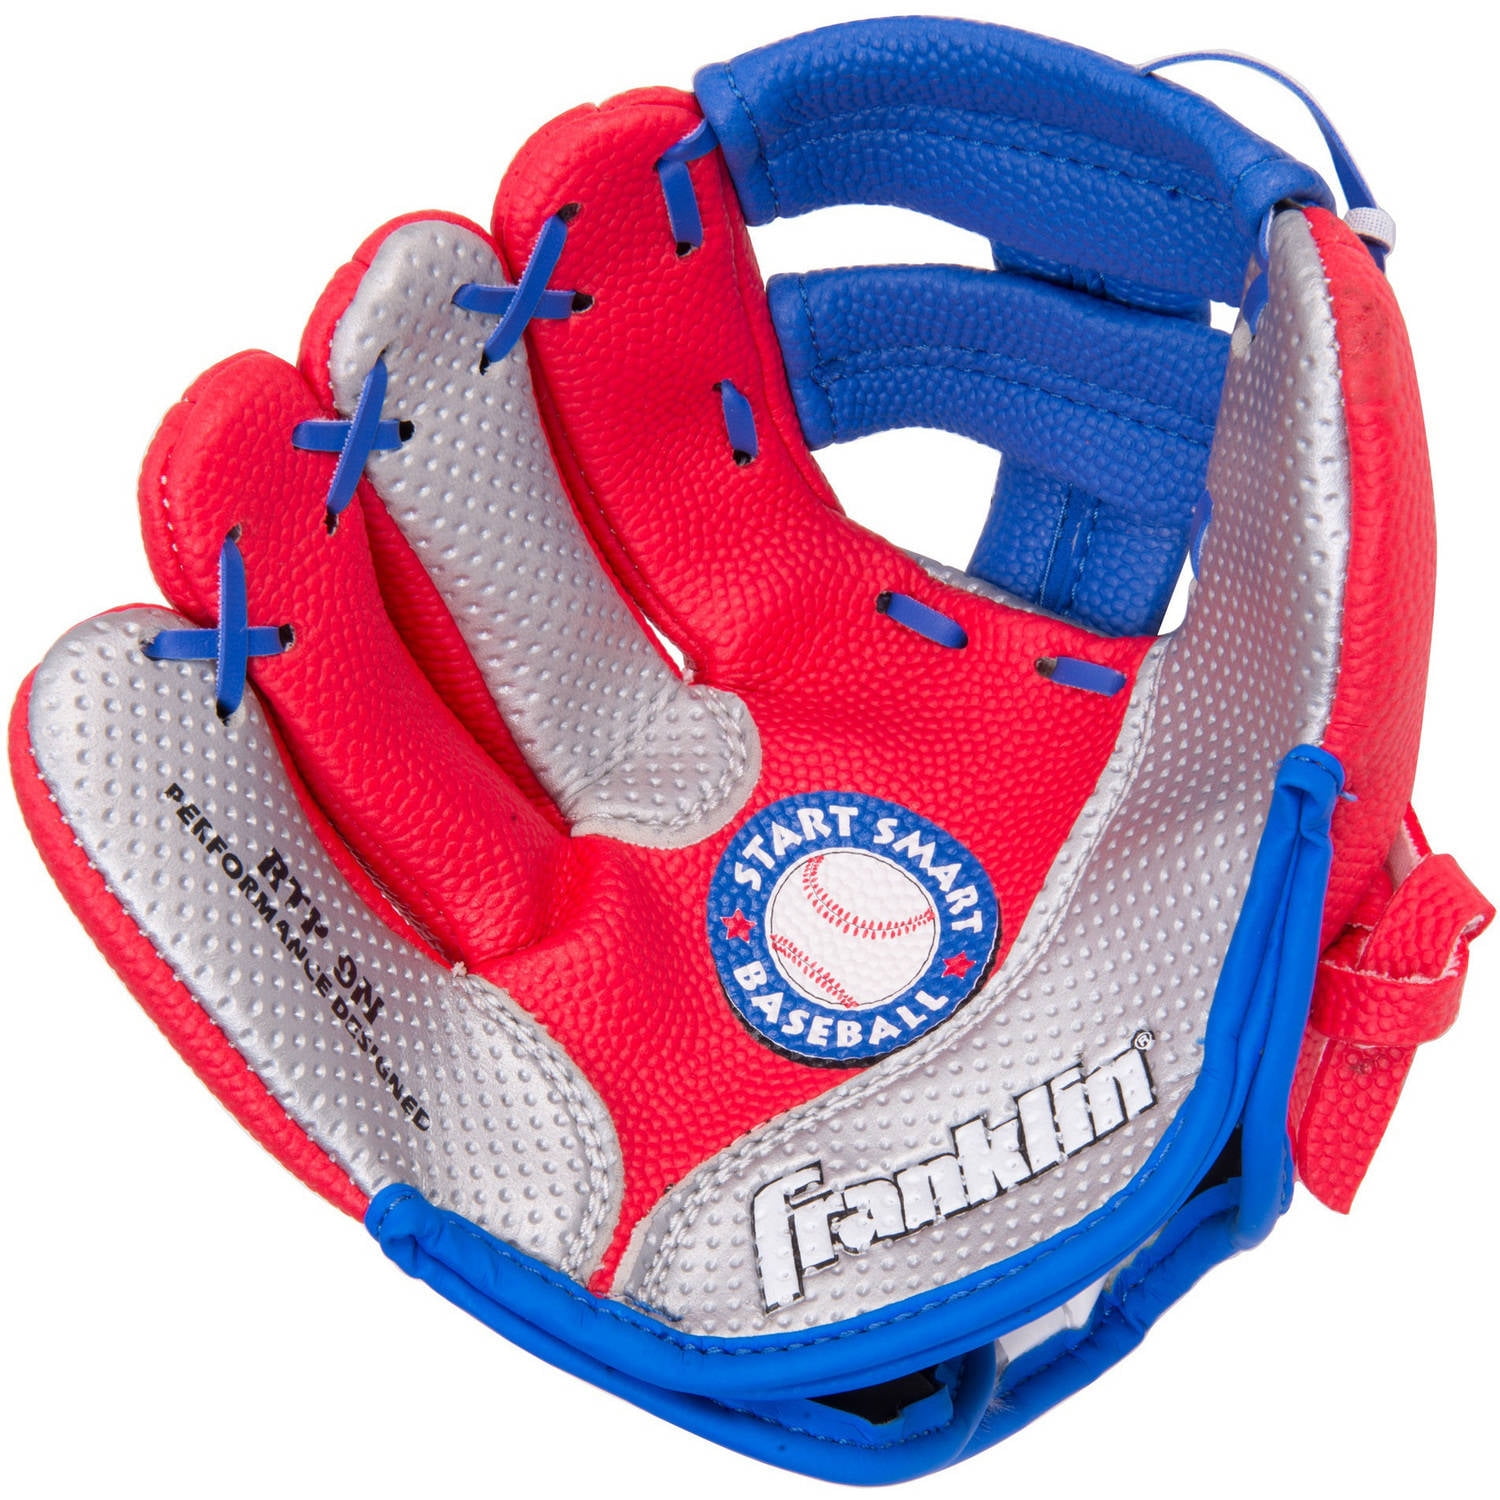 Air-Tech mit Ball Franklin Teeball Fielding Glove 9" Soft Foam Baseball 